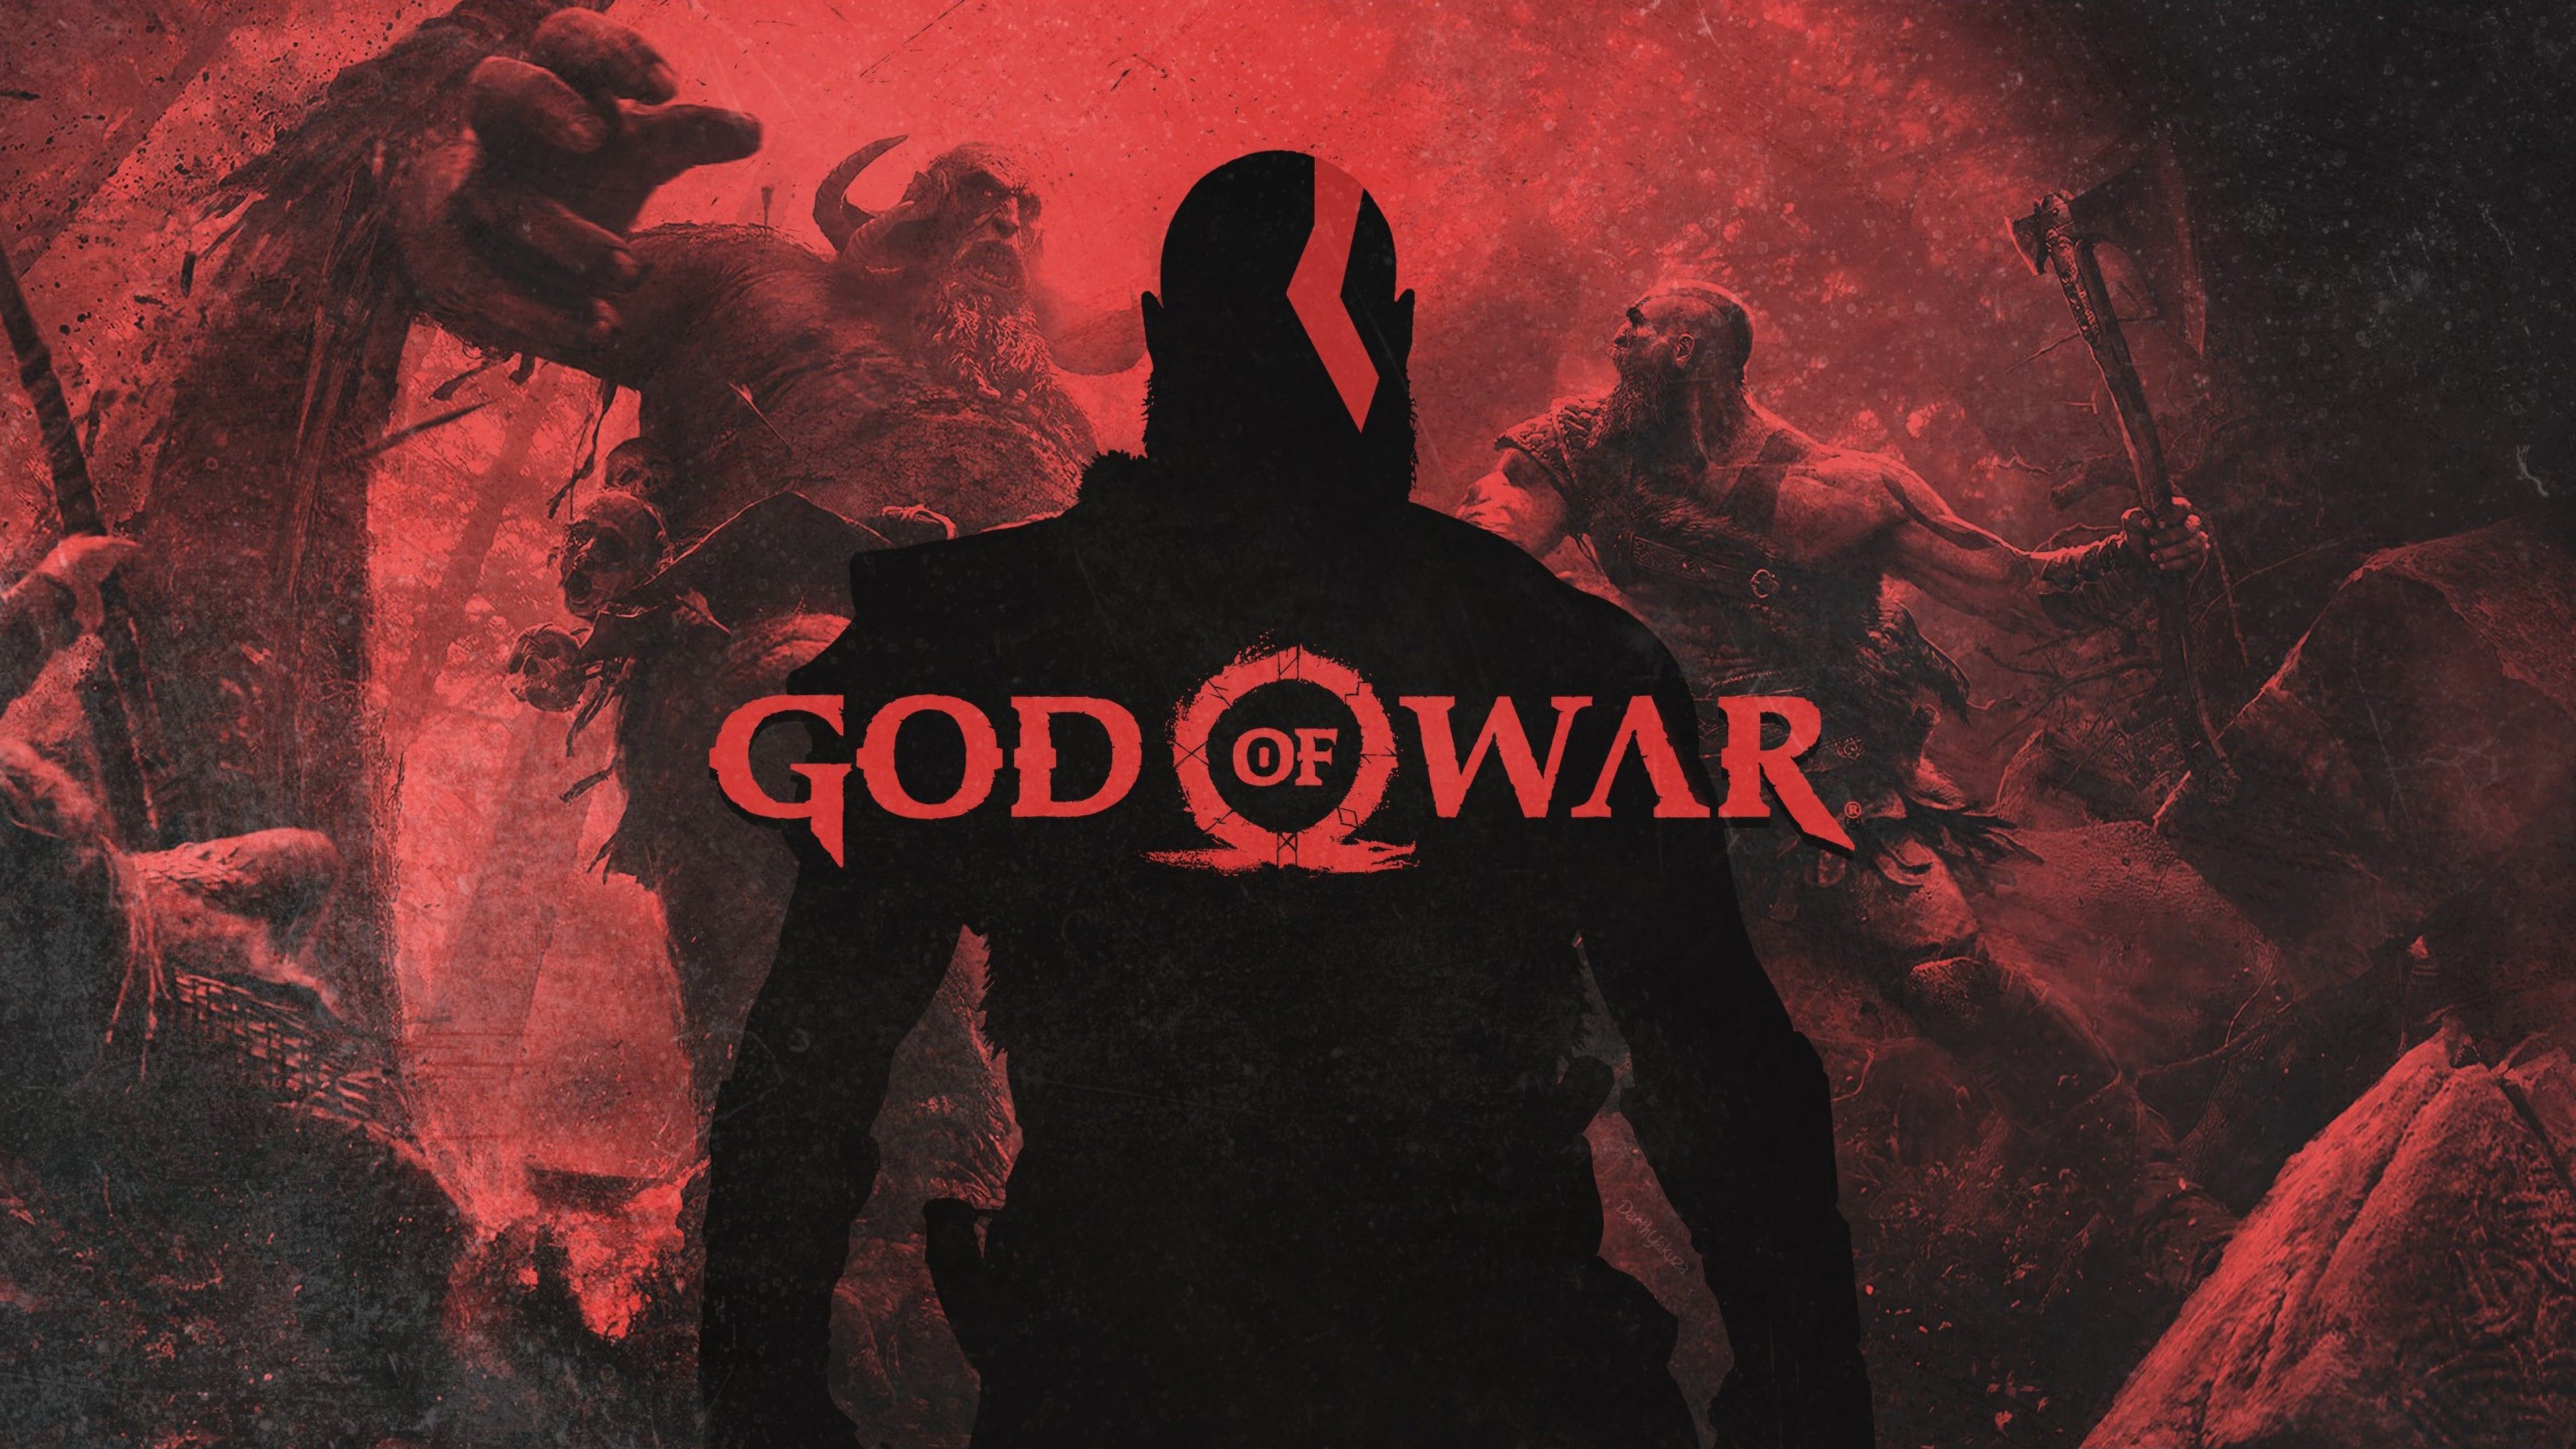 Fondos de pantalla de God of War - FondosMil